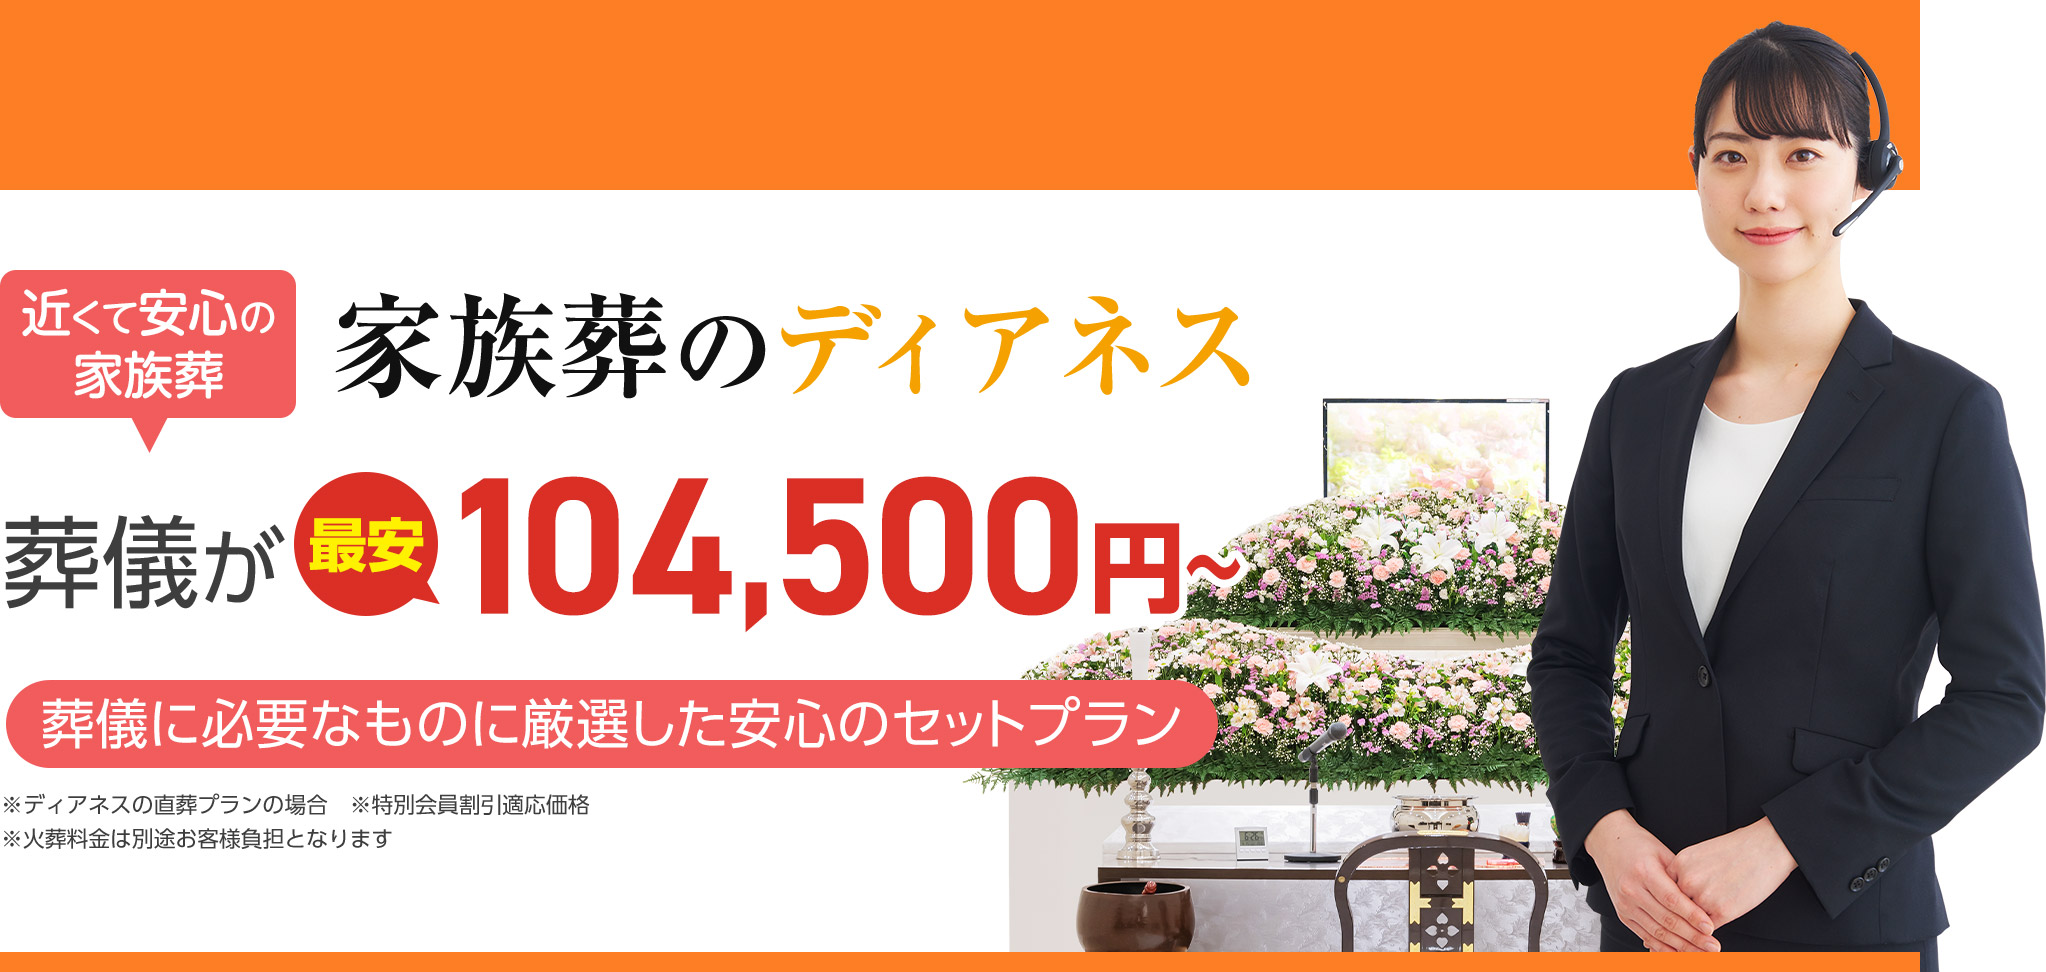 札幌市で家族葬をお探しなら 近くて安心の葬儀・家族葬がWEB限定税抜95,000円